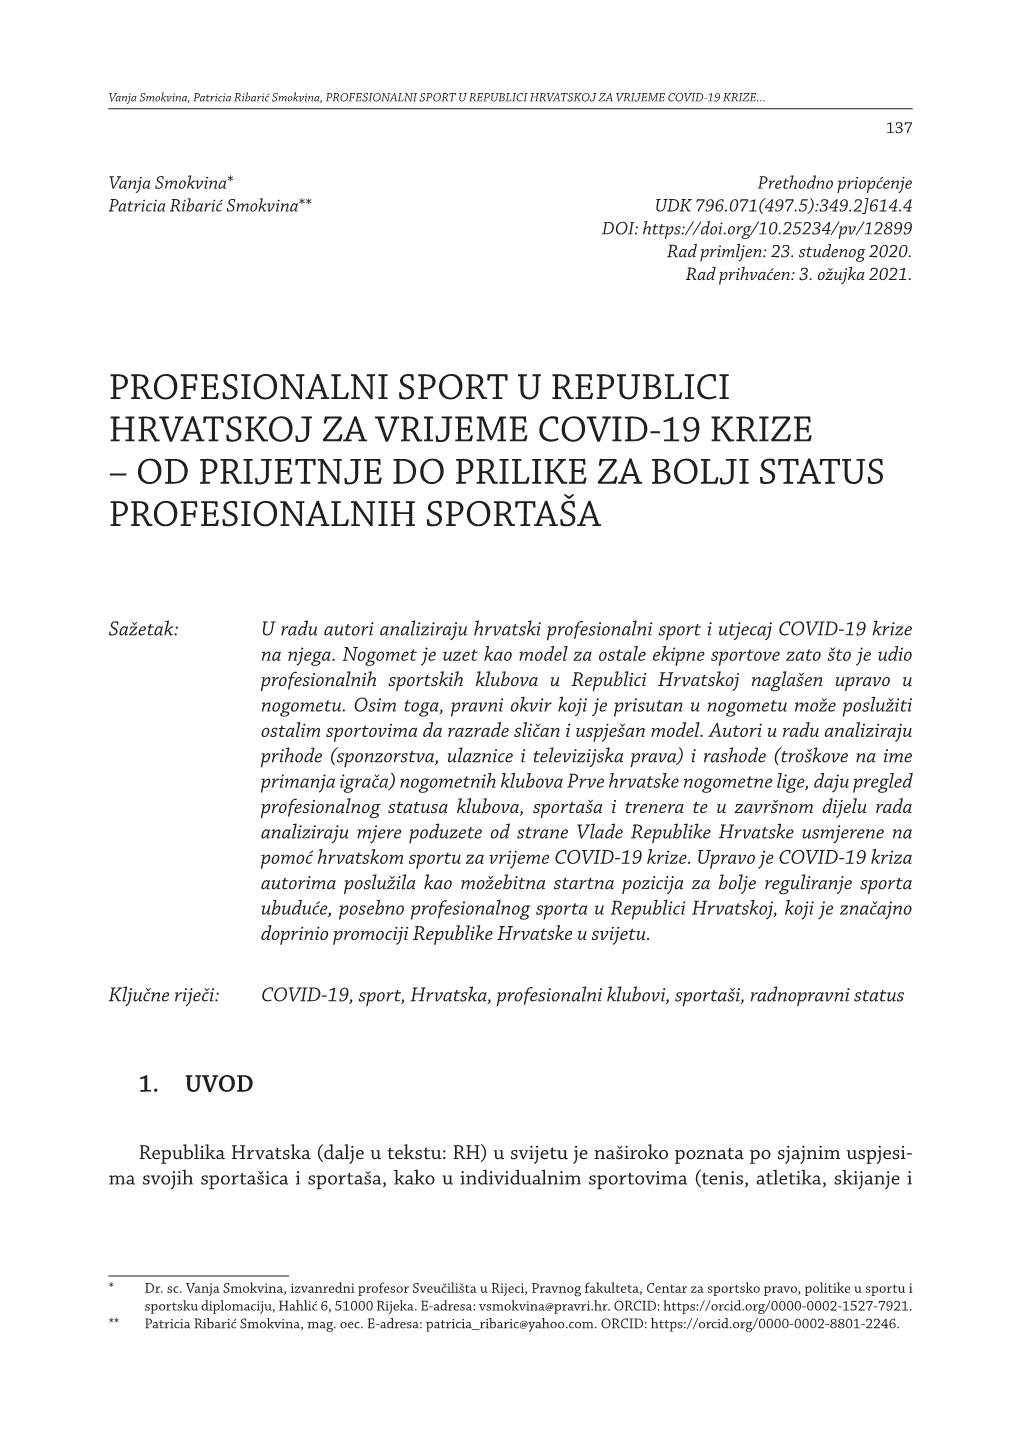 Profesionalni Sport U Republici Hrvatskoj Za Vrijeme Covid-19 Krize